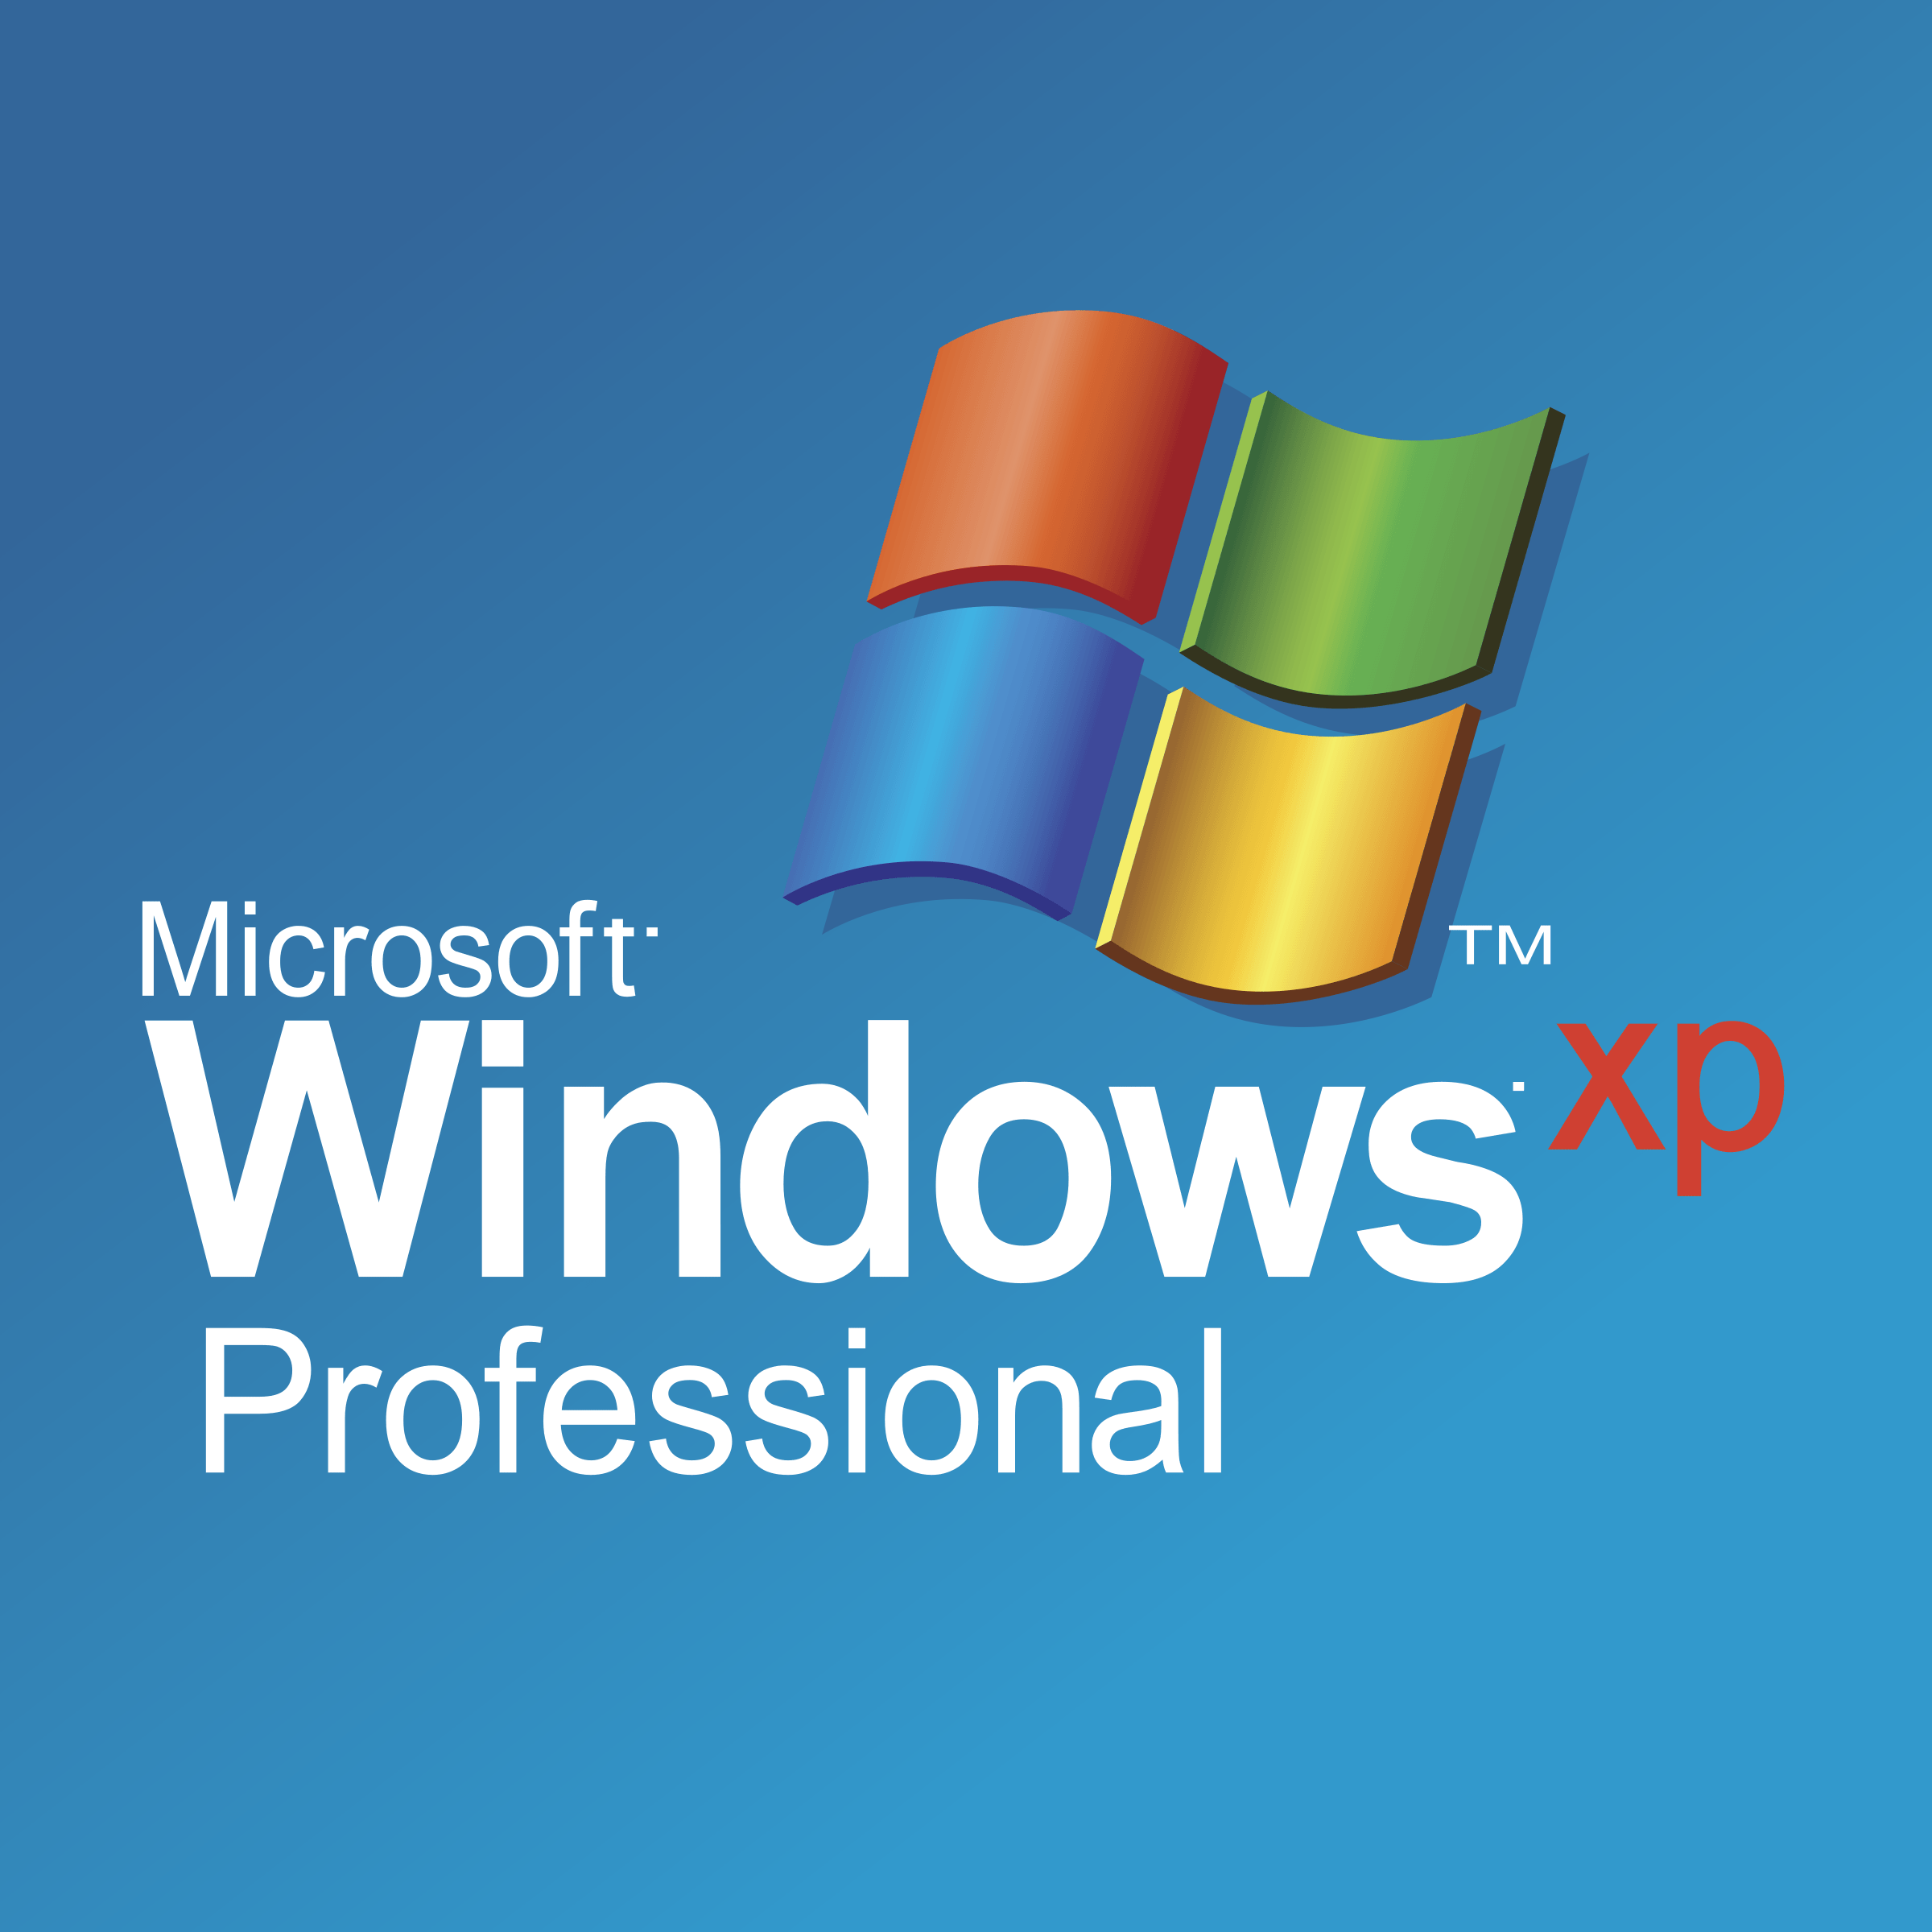 Microsoft Windows XP Logo - Microsoft Windows XP Professional Logo PNG Transparent & SVG Vector ...